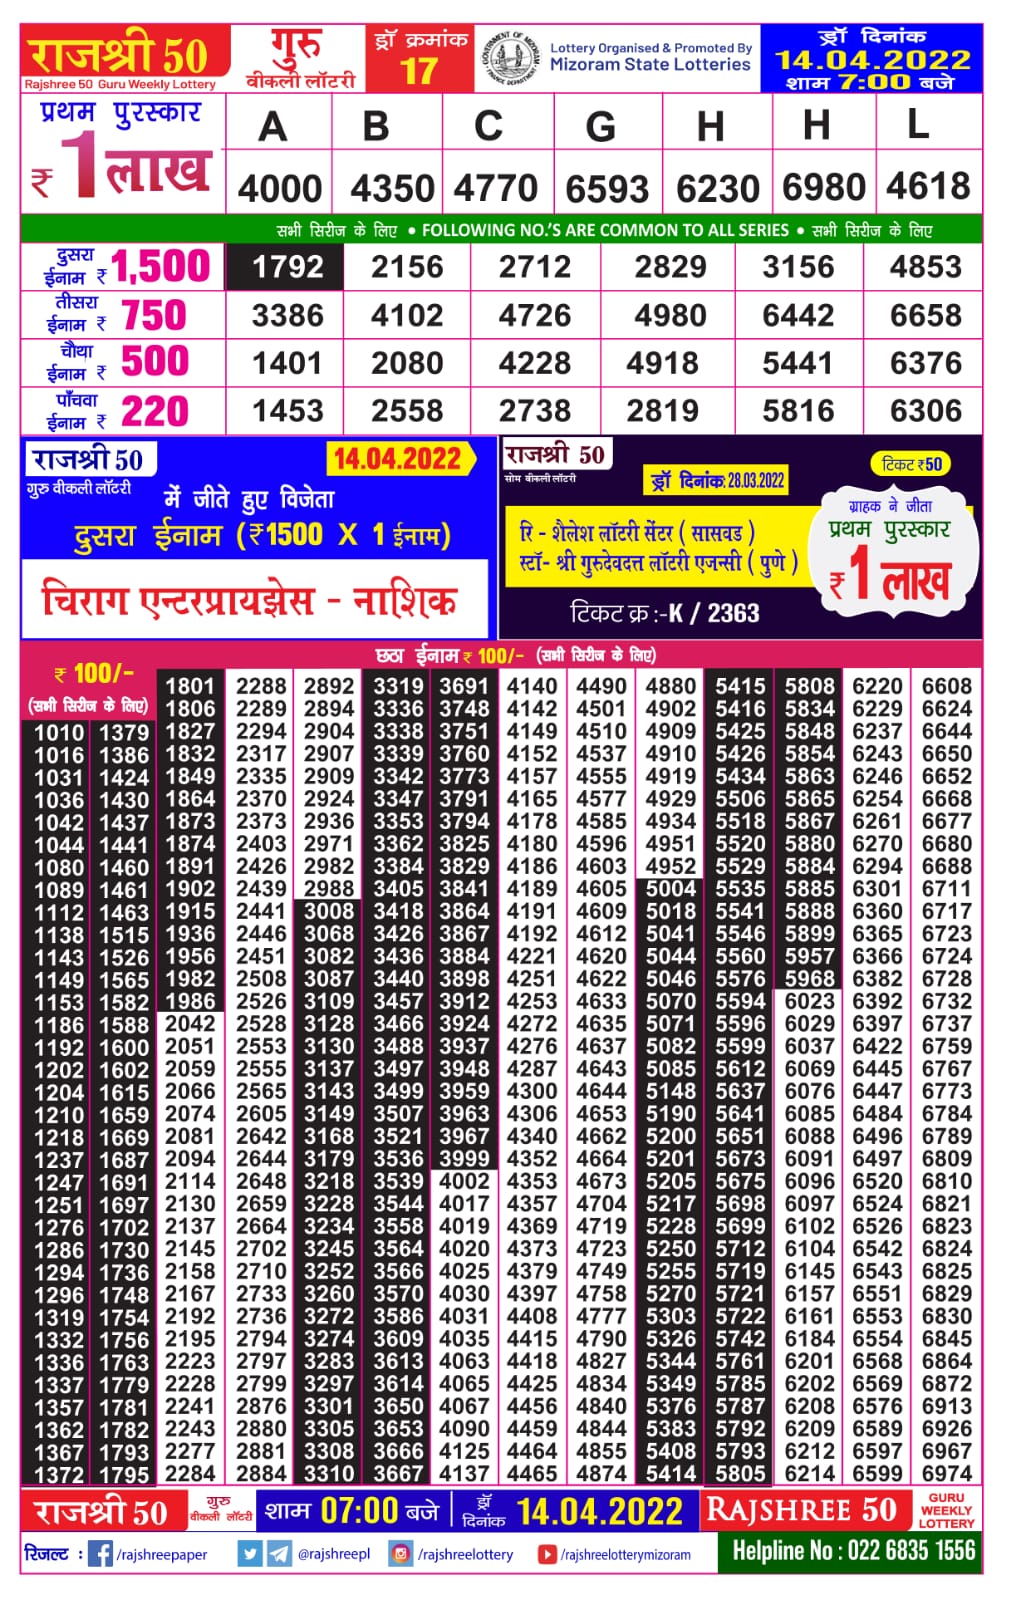 Rajshree 50 Guru Weekly Lottery Result 14.04.2022